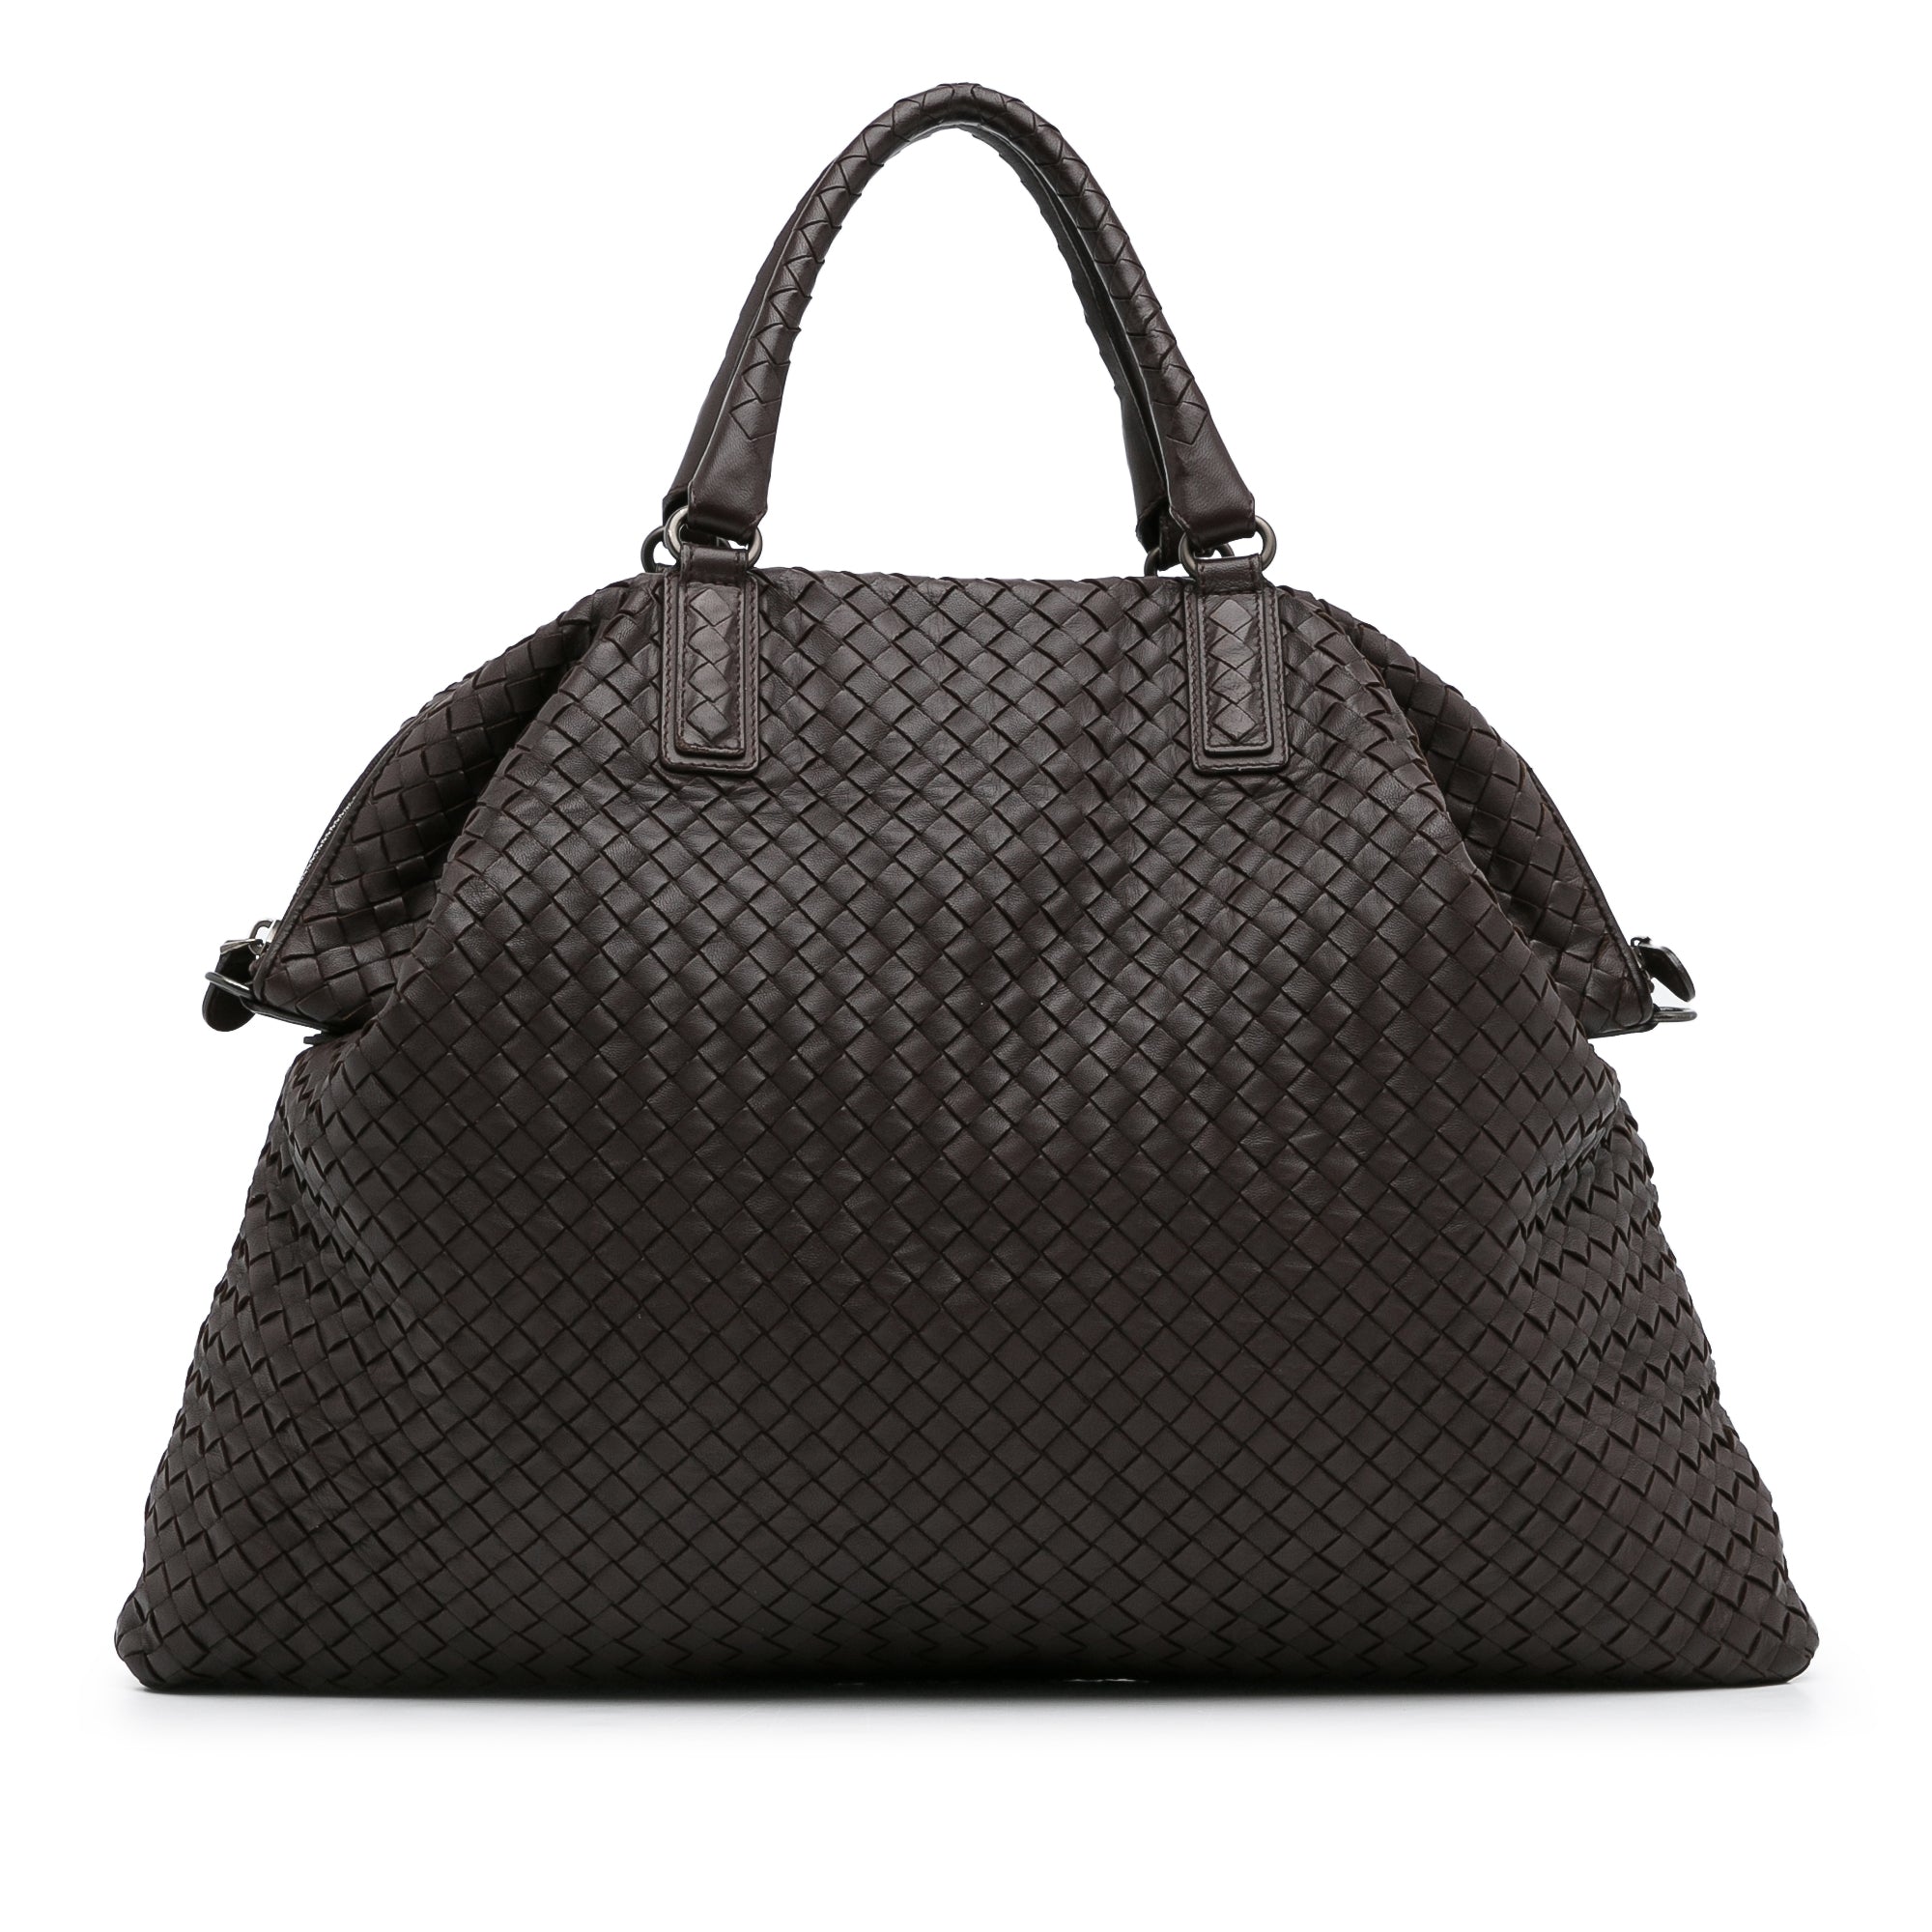 Bottega Veneta - Authenticated Point Handbag - Leather Black Plain for Women, Never Worn